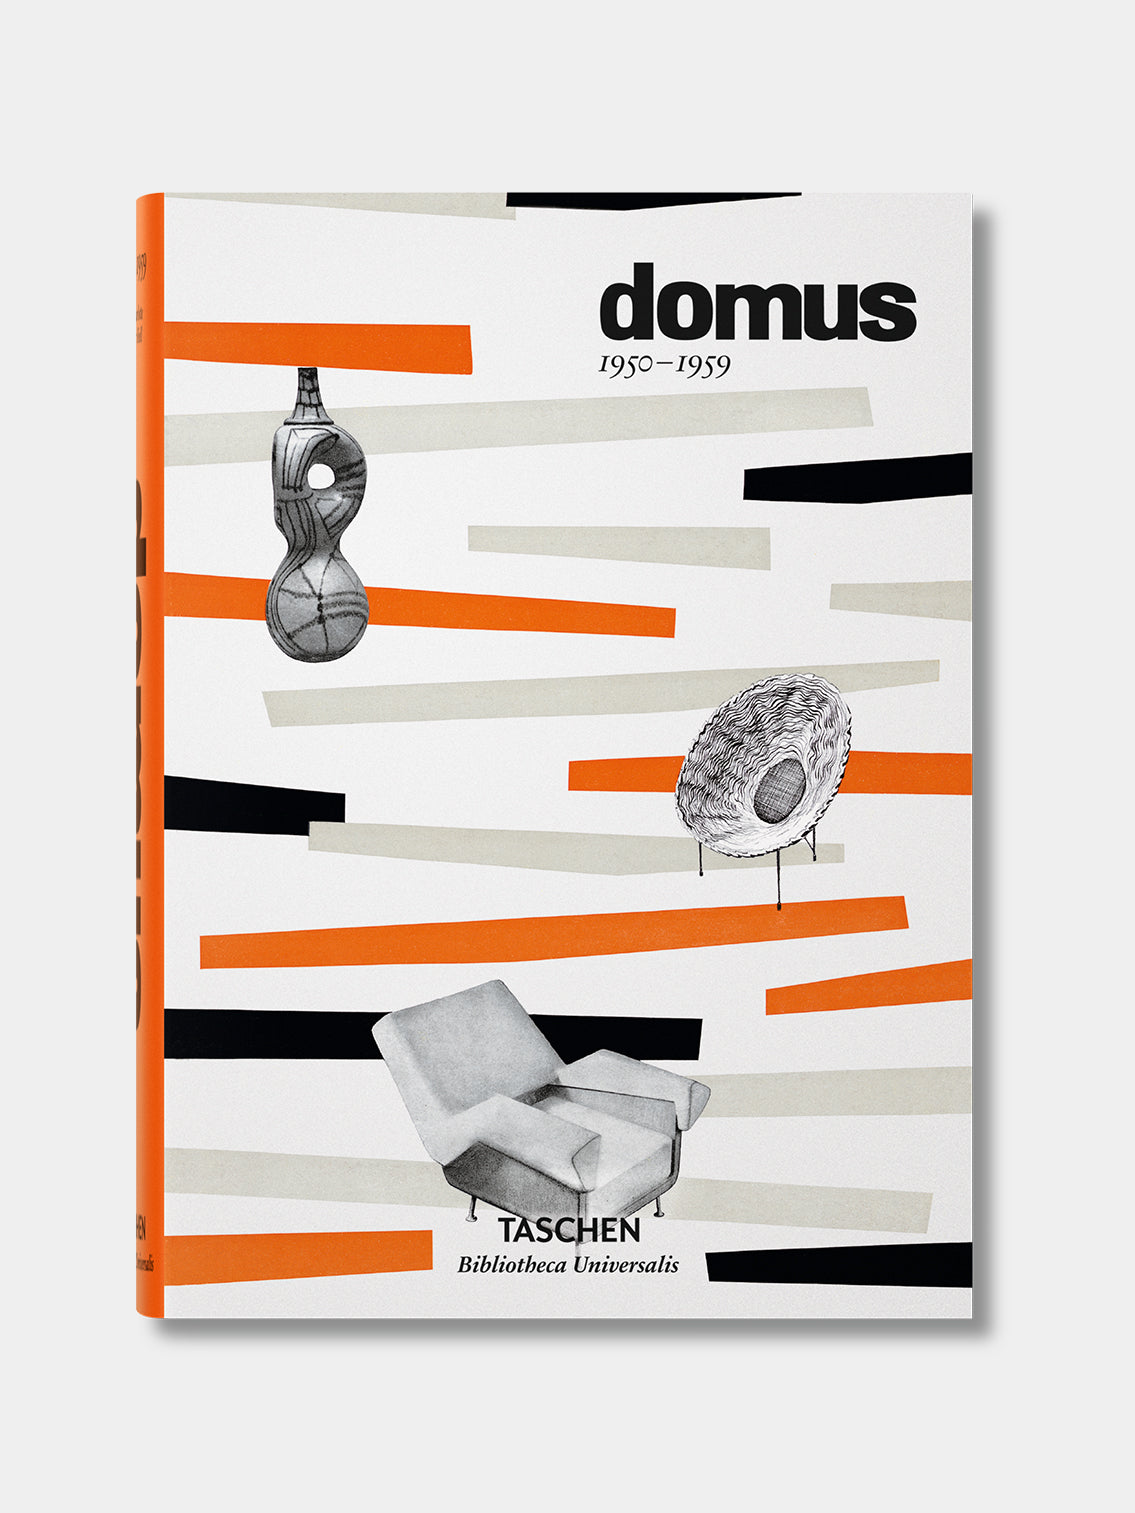 Kauchy_Taschen_Book_Domus-1950